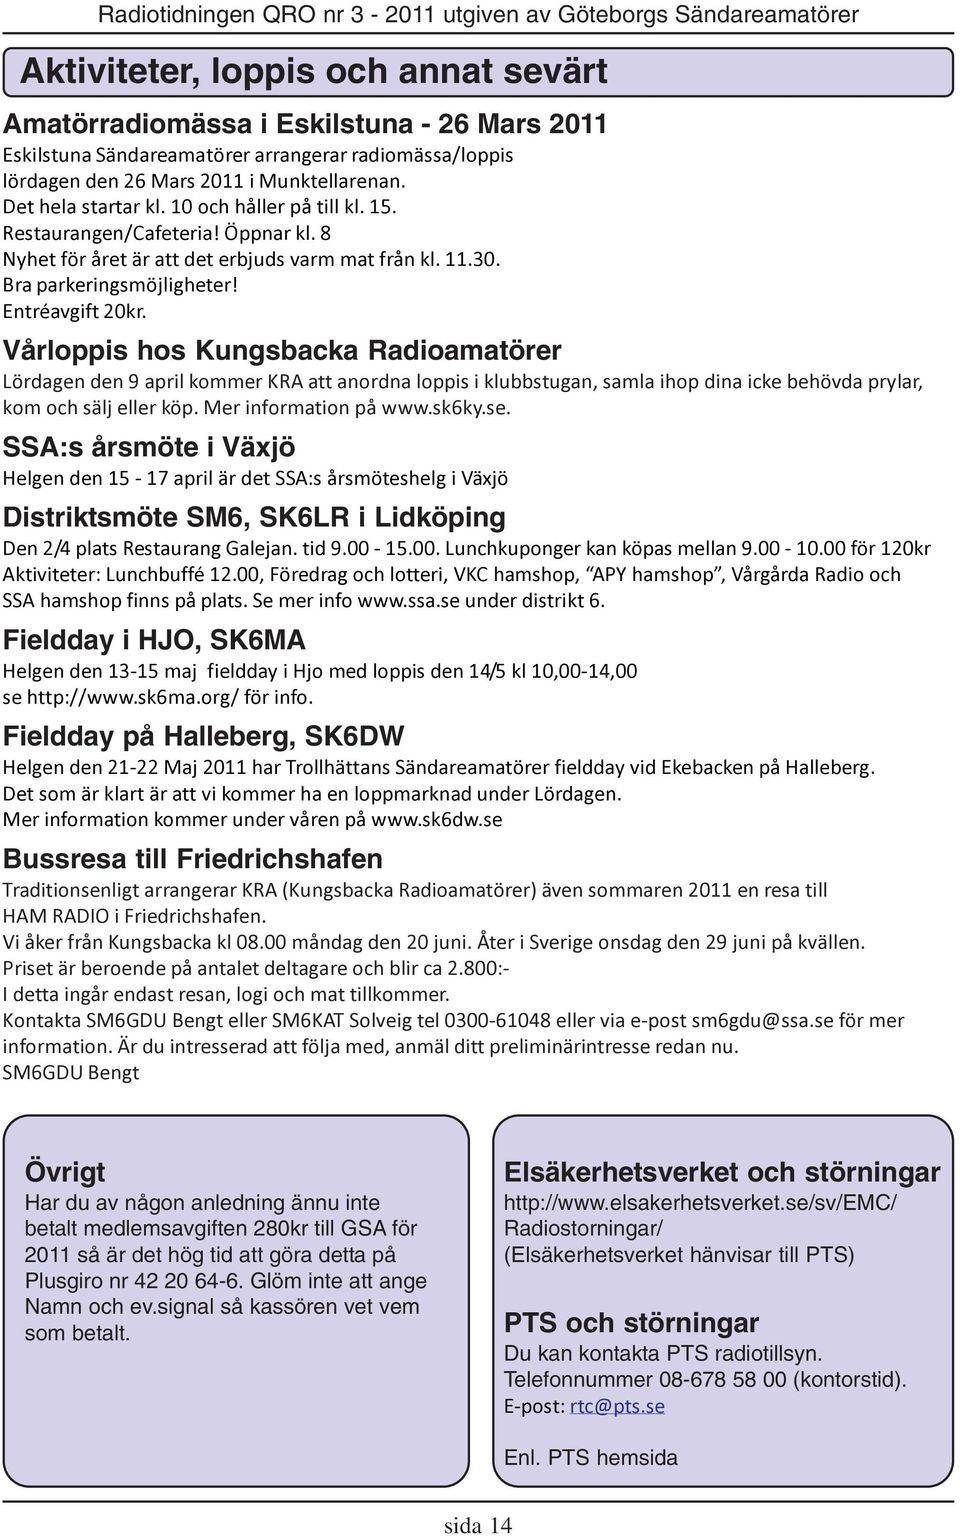 Vårloppis hos Kungsbacka Radioamatörer Lördagen den 9 april kommer KRA att anordna loppis i klubbstugan, samla ihop dina icke behövda prylar, kom och sälj eller köp. Mer information på www.sk6ky.se.